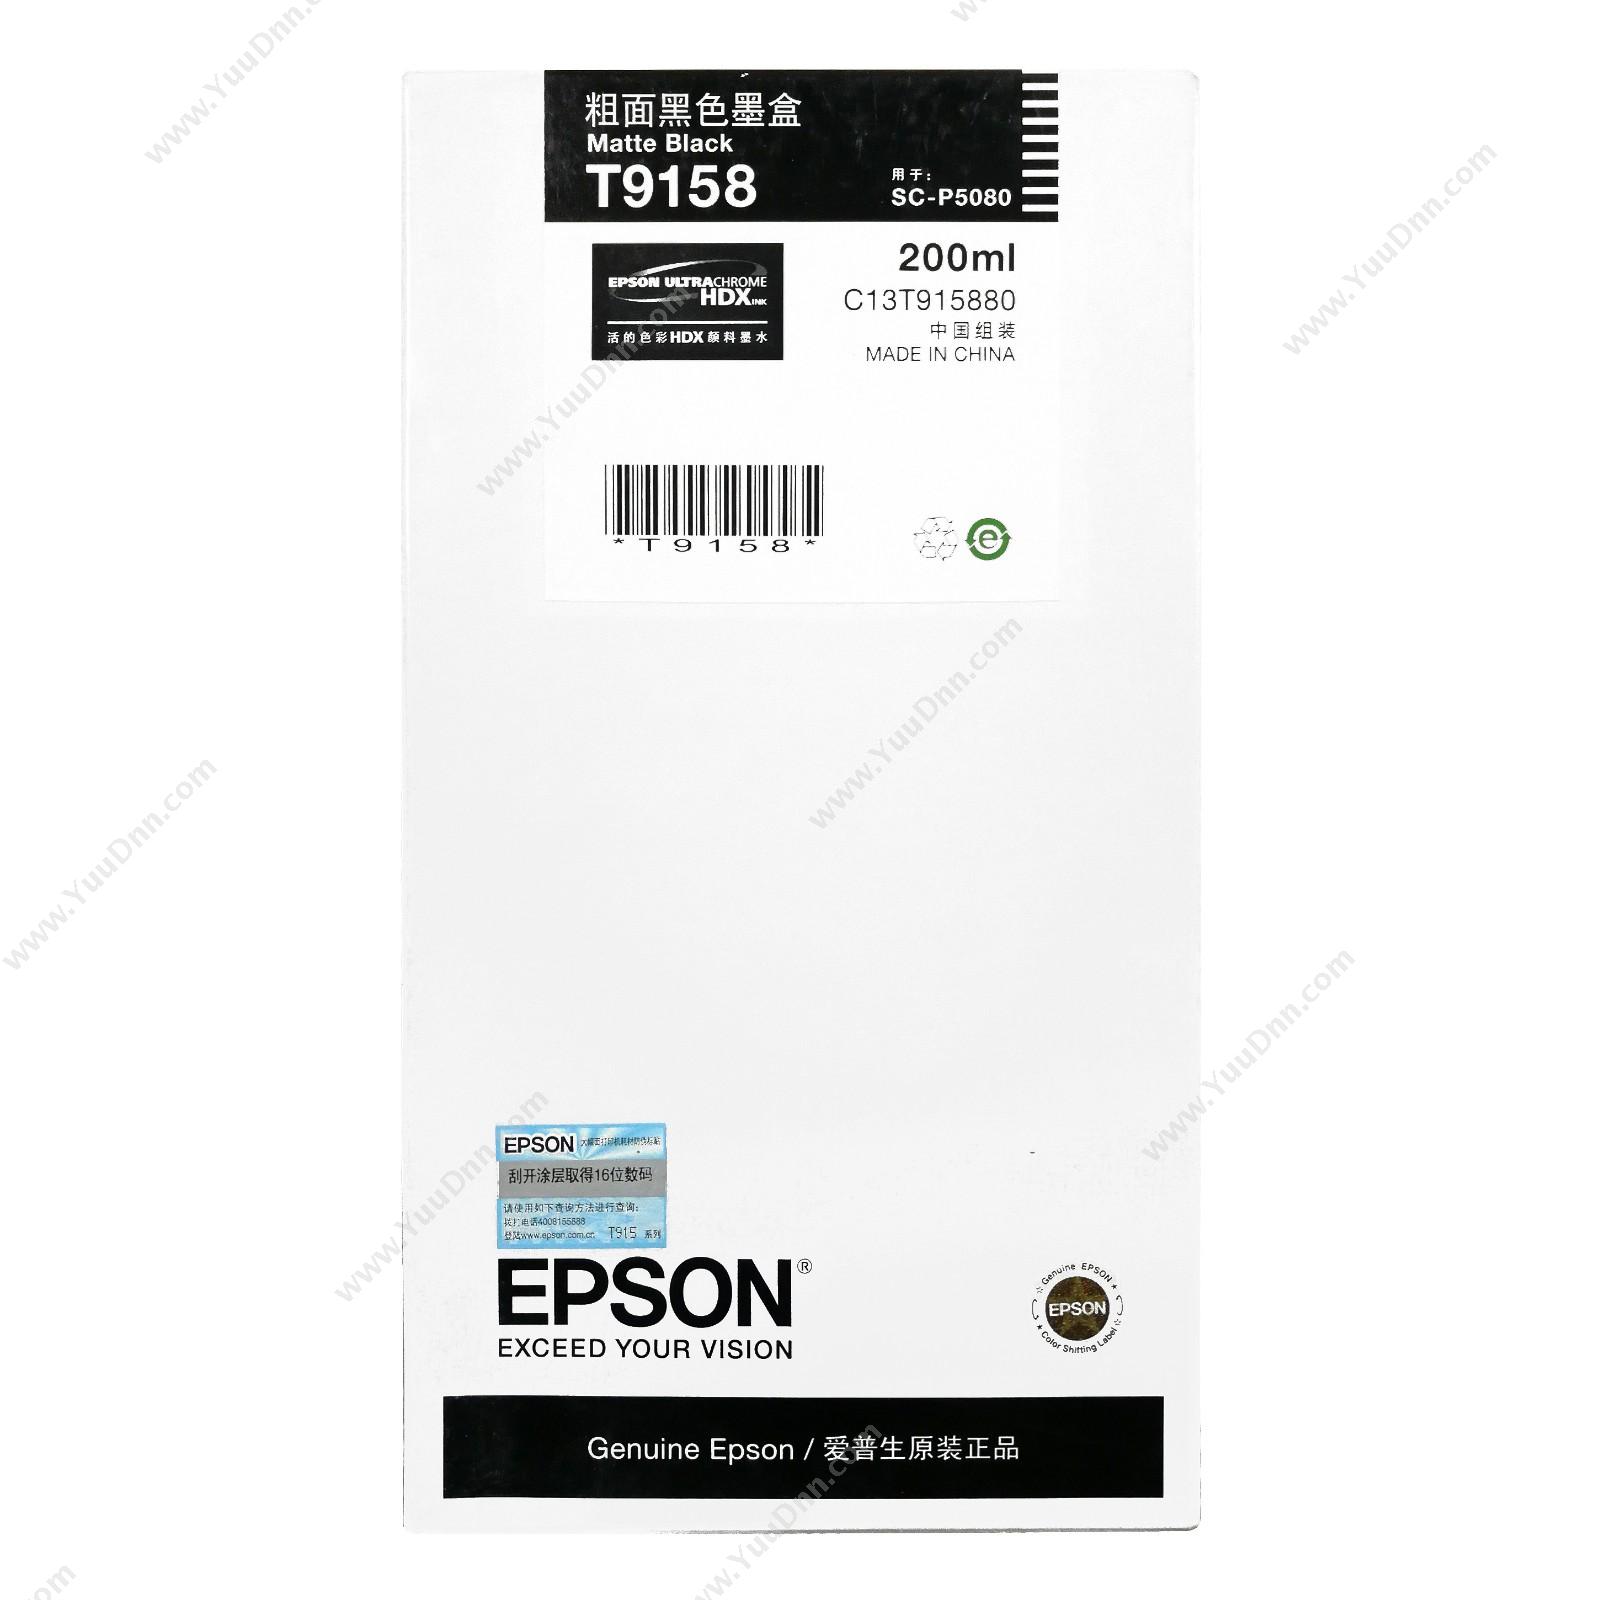 爱普生 EpsonP5080粗面黑200ml(C13T915880)墨盒